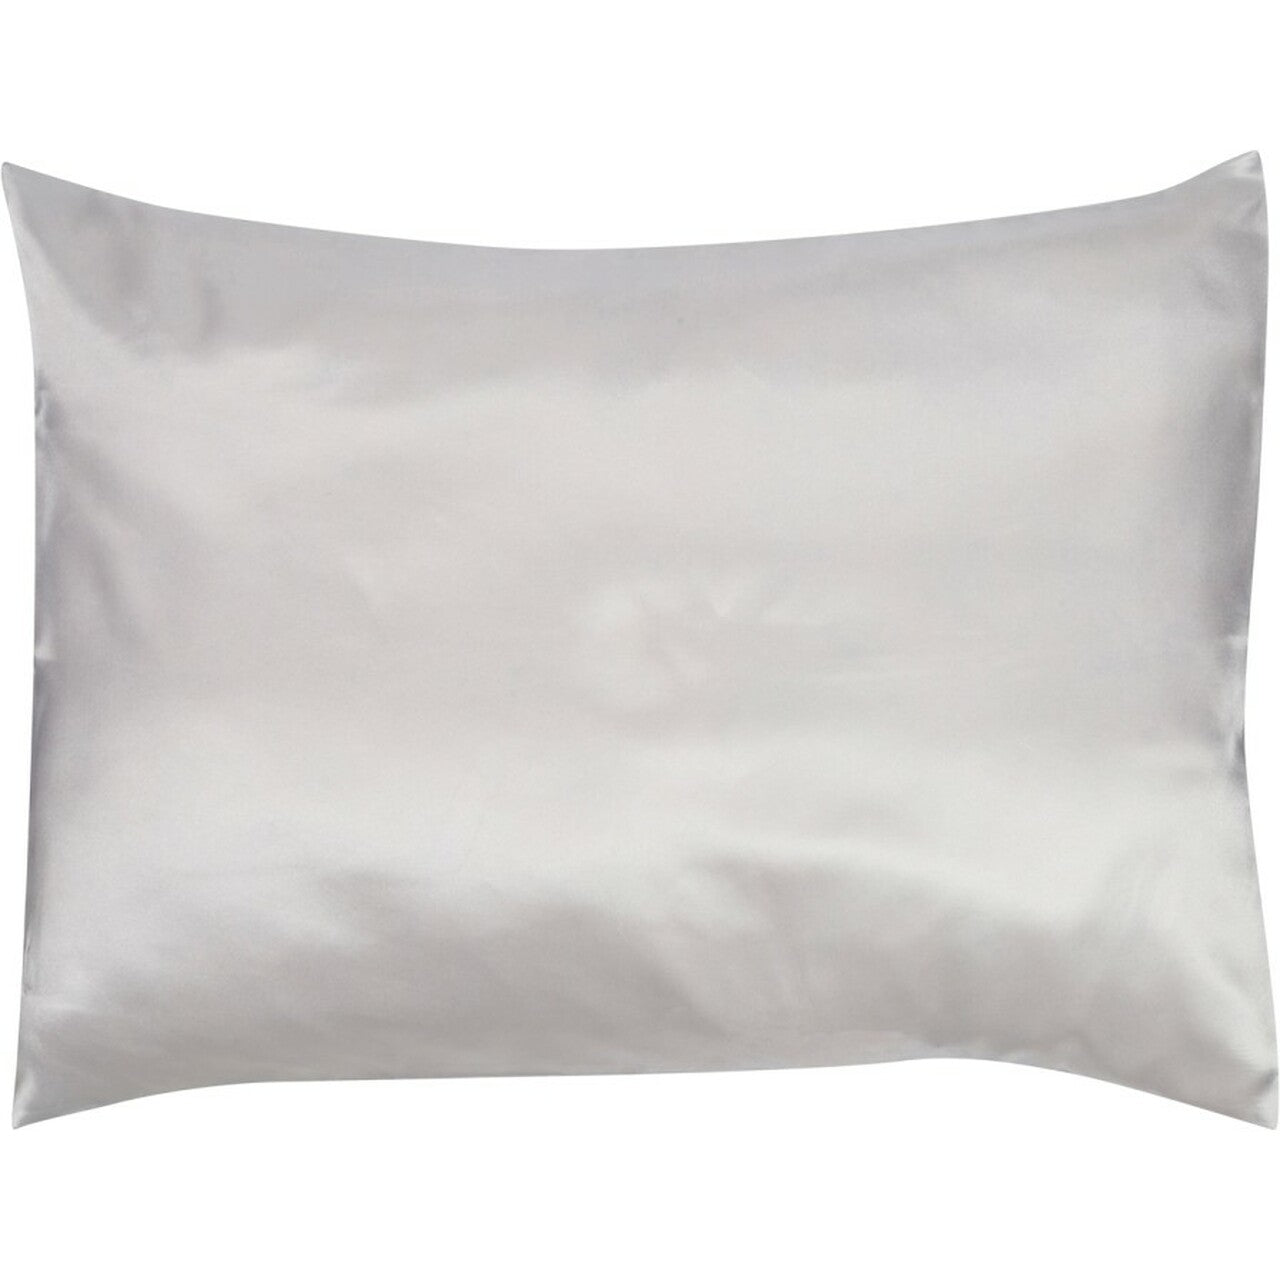 Cala - Satin Pillow Case Silver